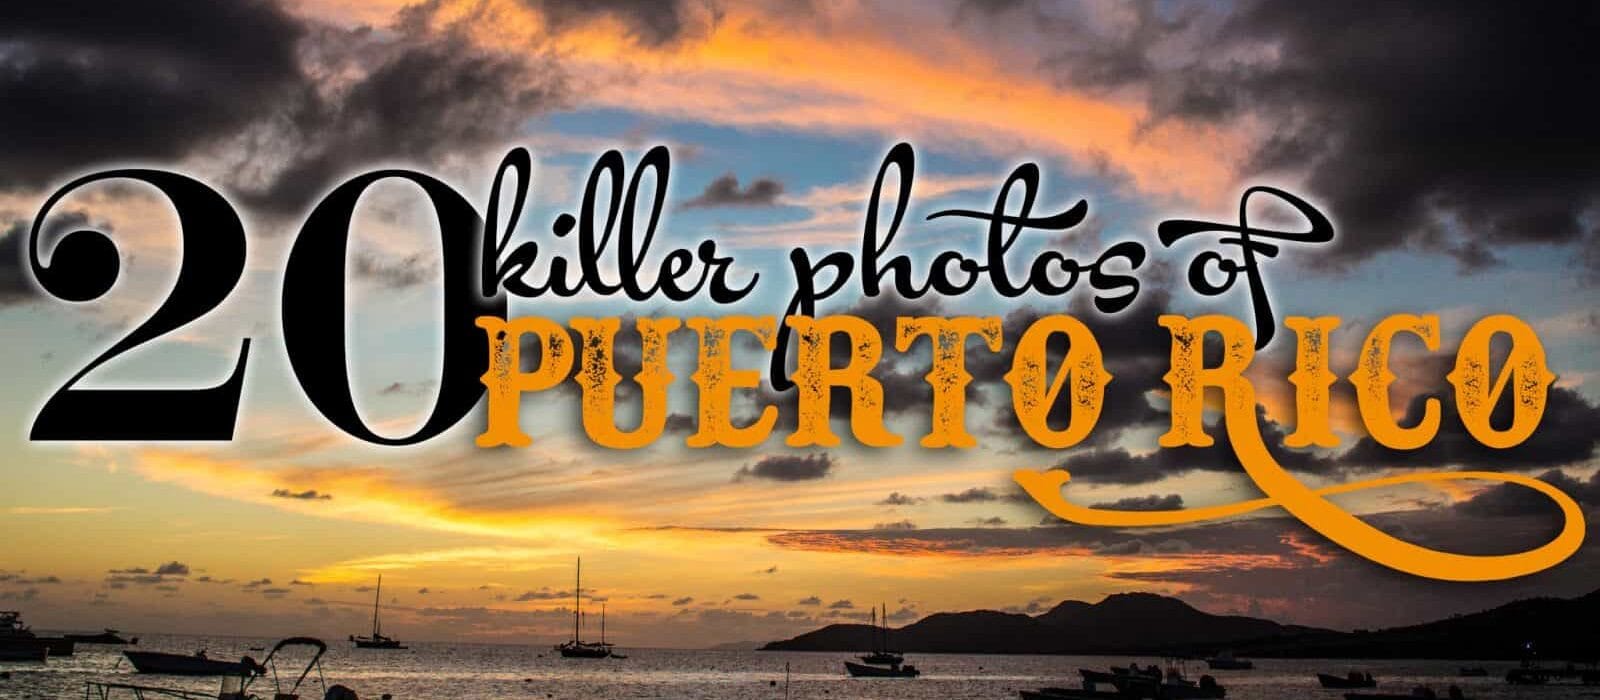 20 Killer Photos of Puerto Rico